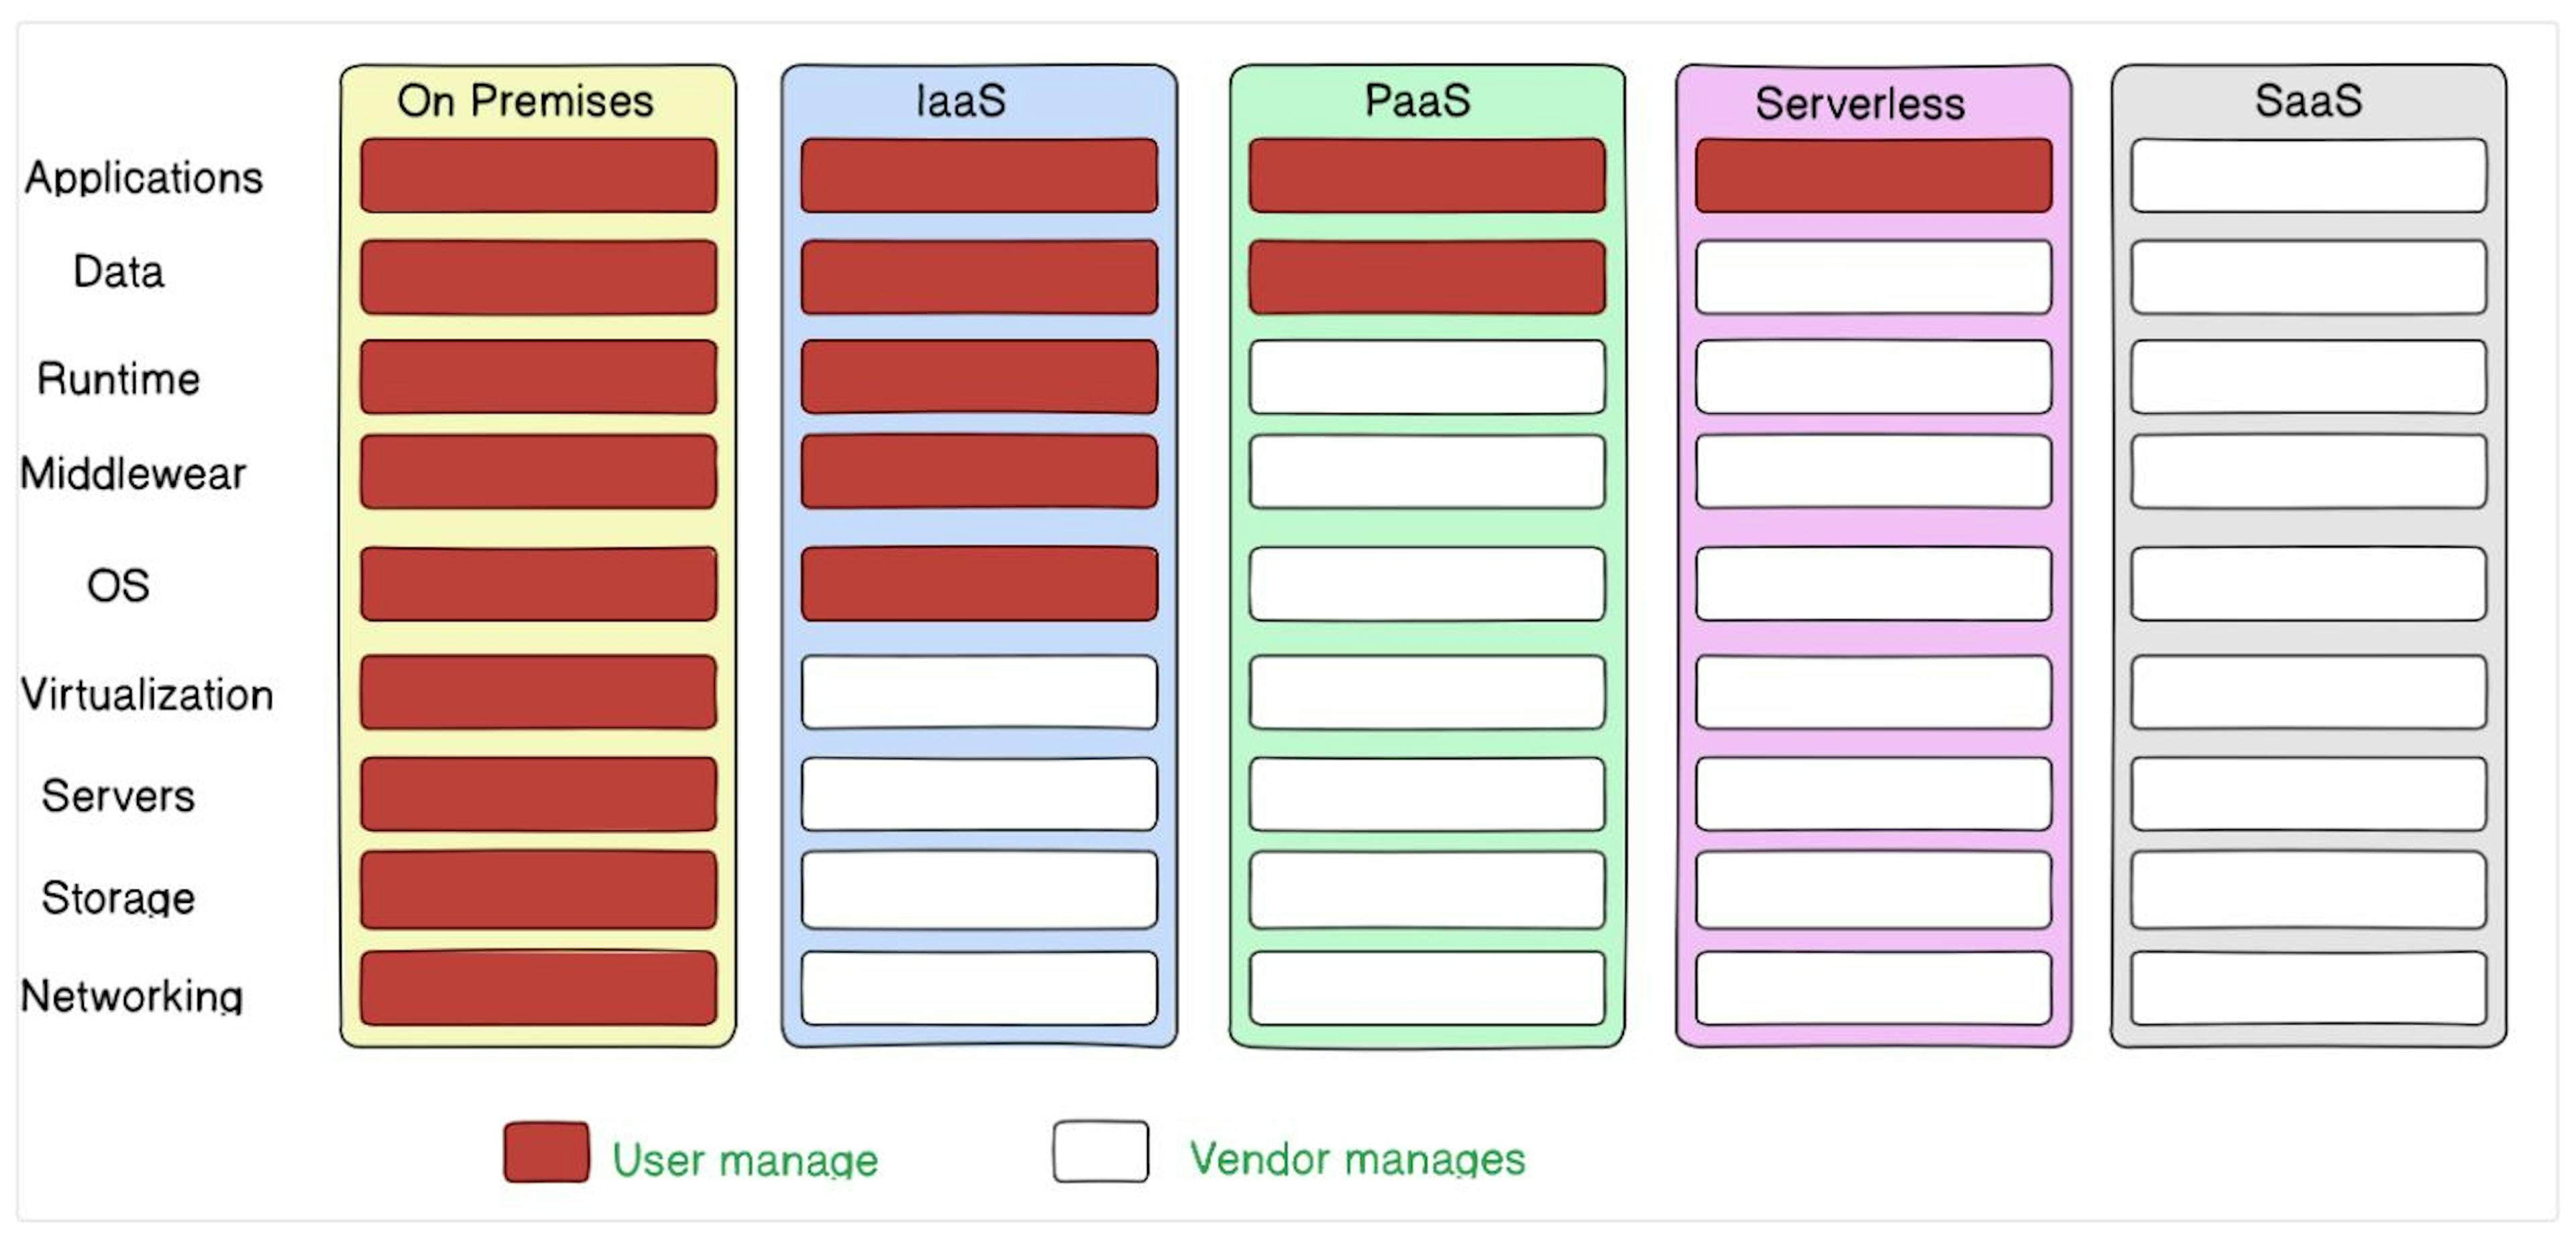 On Premises vs IaaS vs PaaS vs Serverless vs SaaS